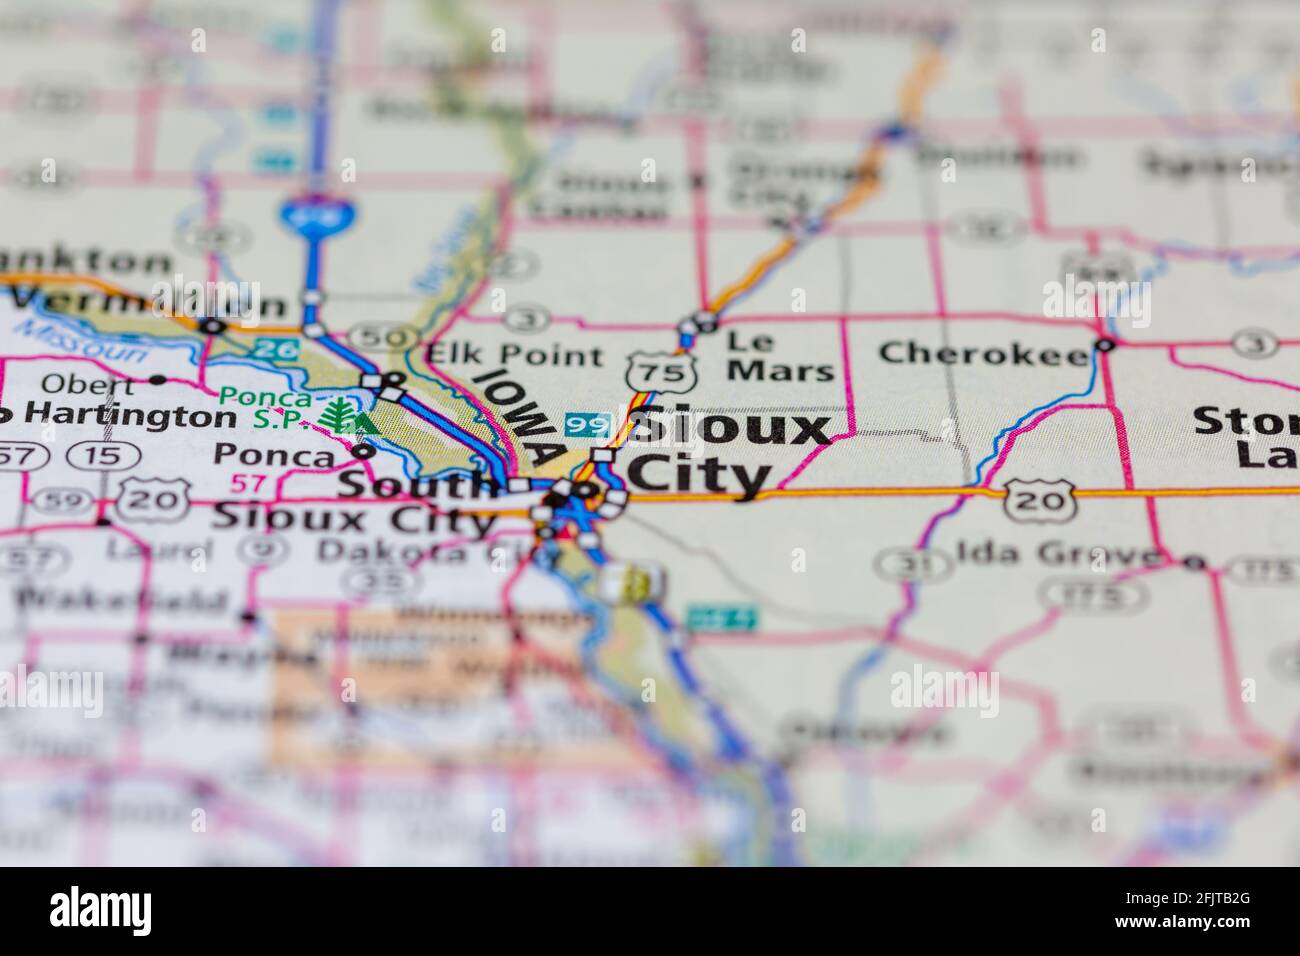 Sioux City iowa USA et ses environs illustrés sur un Carte routière ou carte géographique Banque D'Images